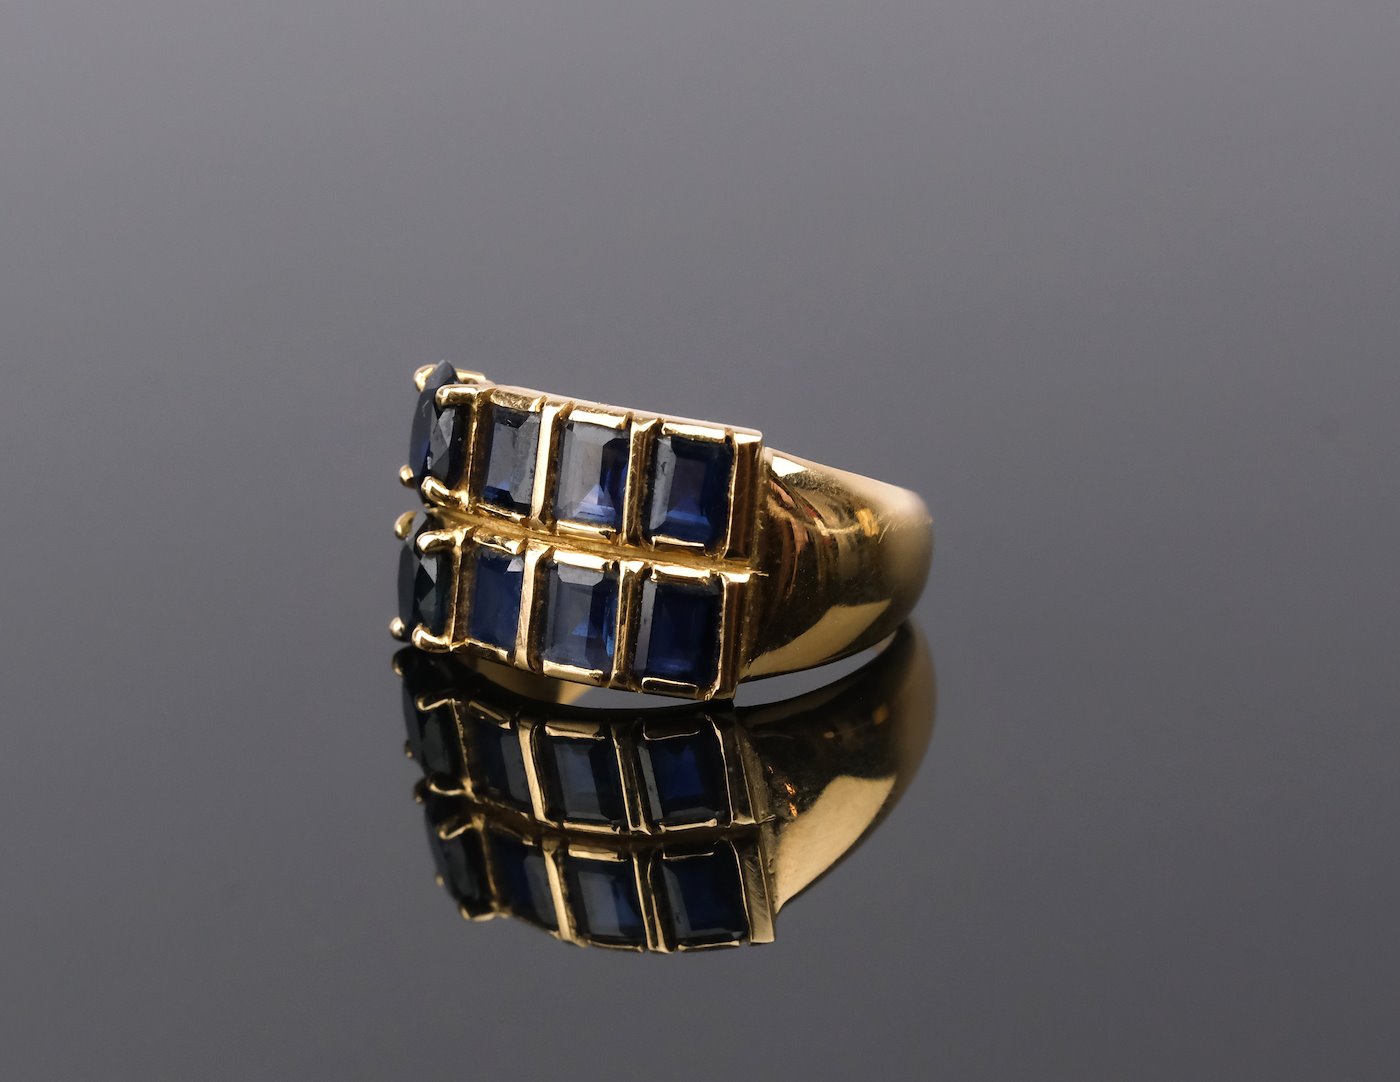 .. - Zlatý prsten s 8 safíry, ryzost 750/1000, značeno platnou puncovní značkou "kohout", hrubá hmotnost 7,00 g